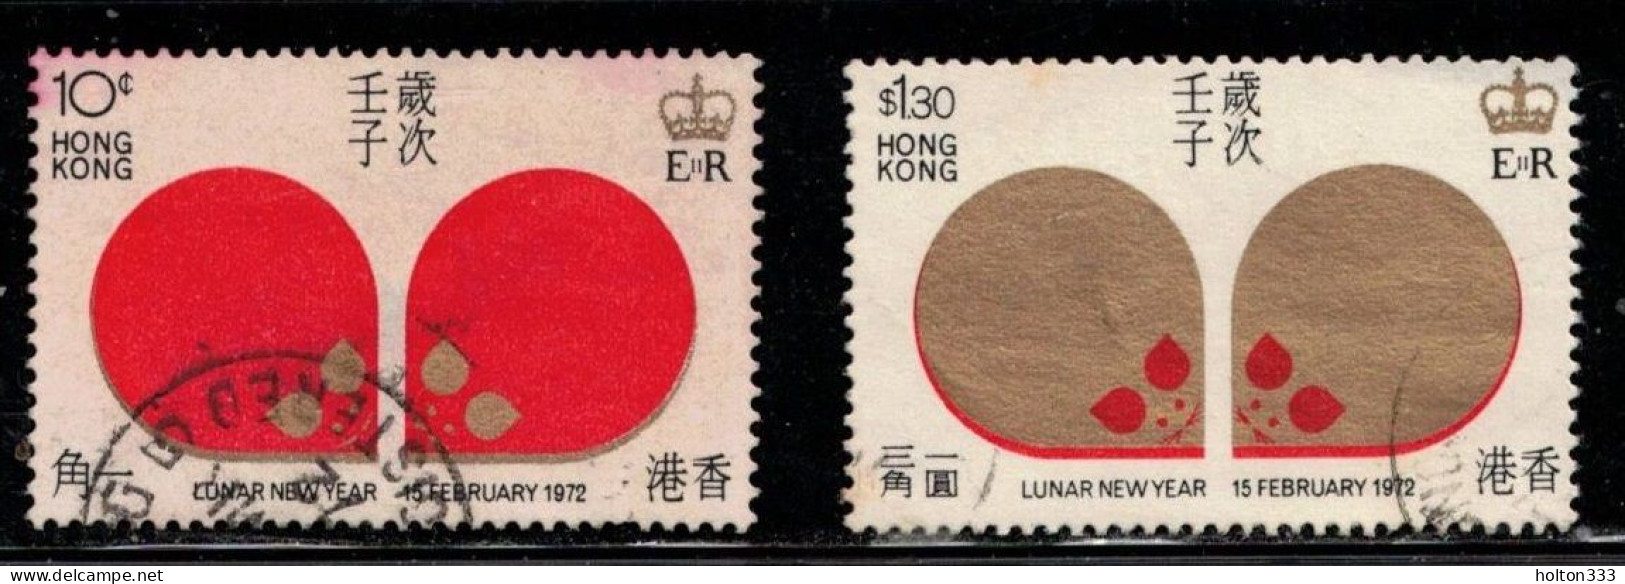 HONG KONG Scott # 268-9 Used - Lunar New Year 1972 - Gebraucht